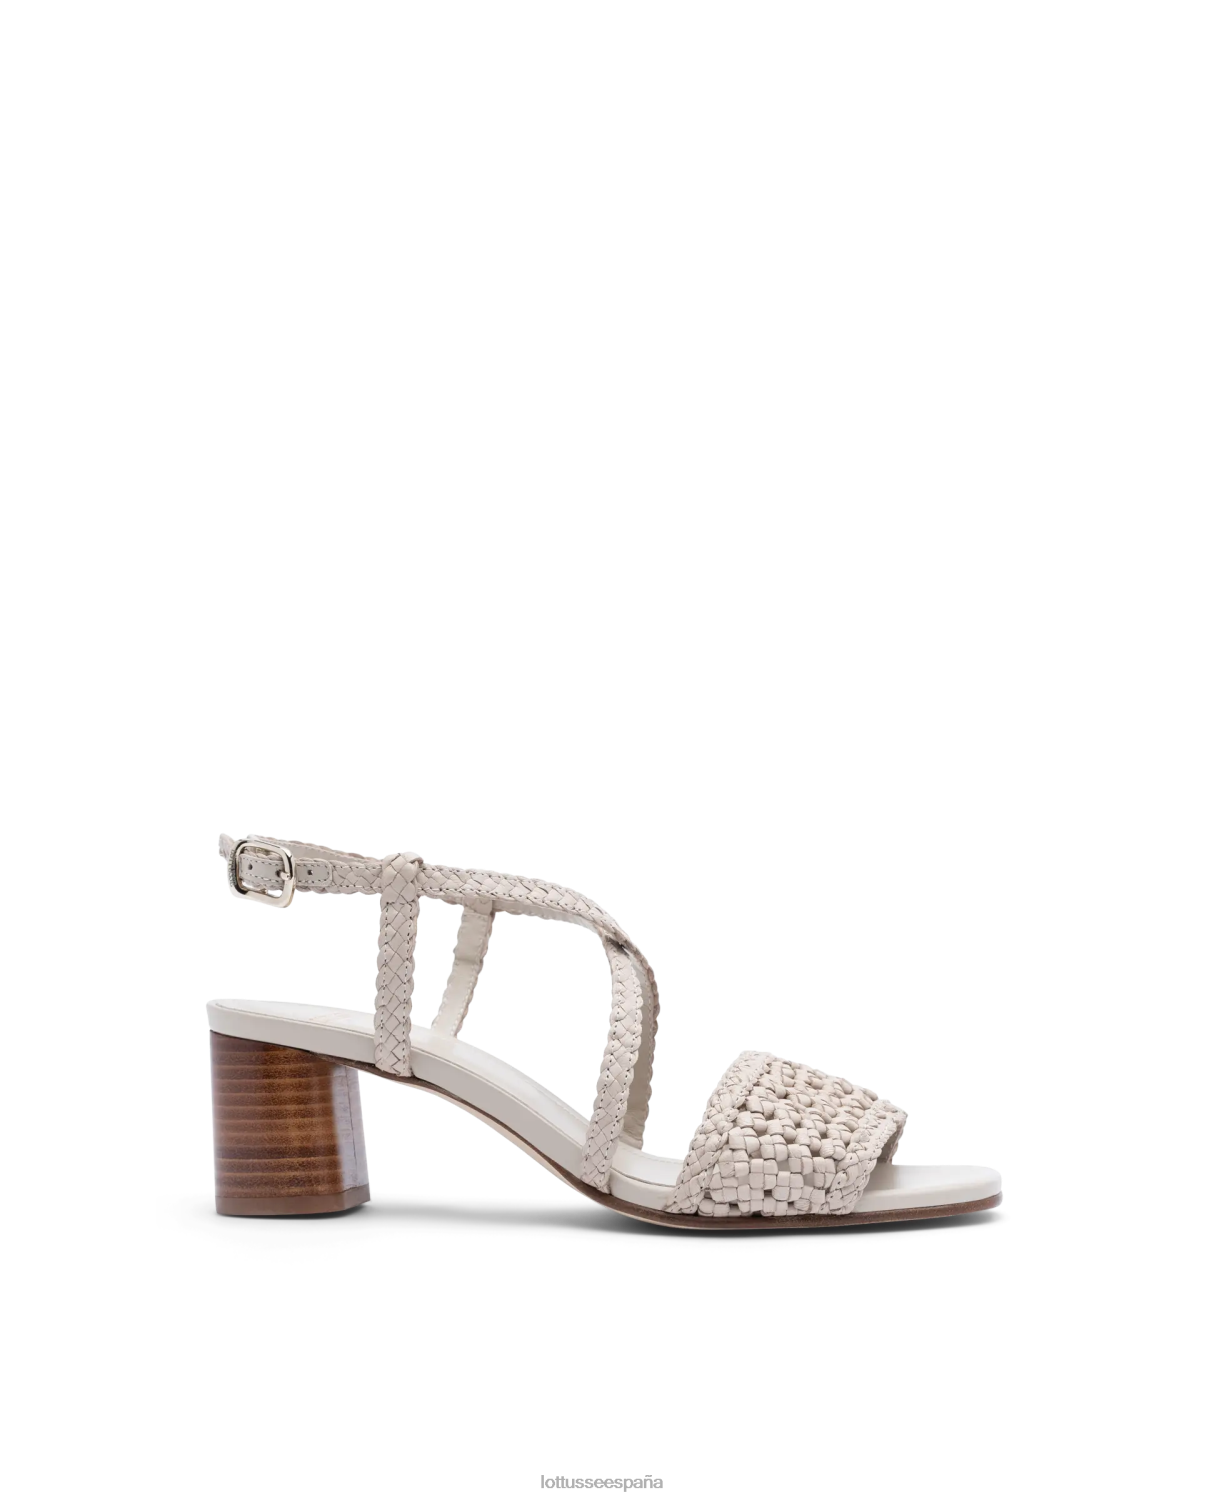 Lottusse sandalias de cuero de malla de cordero de verano blanquecino mujer calzado V40NX316